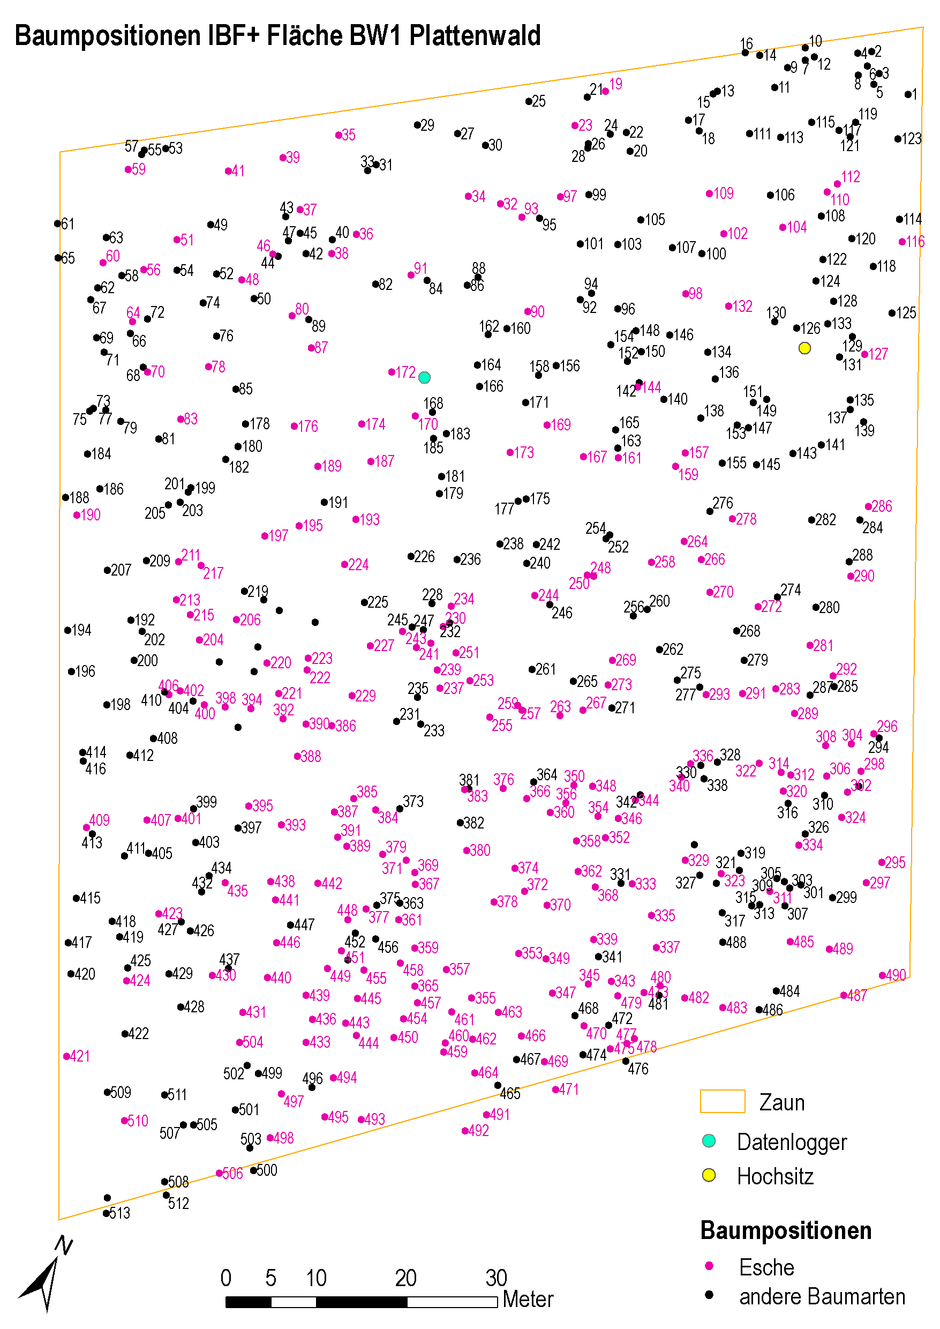 Das Foto zeigt die Stammfusskarte der Untersuchungsfläche Plattenwald in Baden-Württemberg. Die über 500 Bäume auf der IBF+-Fläche wurden einzelnd eingemessen und als Karte ausgegeben. In der Darstellung sind die Eschen farblich hervorgehoben. Außerdem sind der Zaun, der Datenlogger und ein Hochsitz zur Orientierung dargestellt. Mit dem Nordpfeil und der Skala können sich die Forschenden auf der Fläche orientieren.